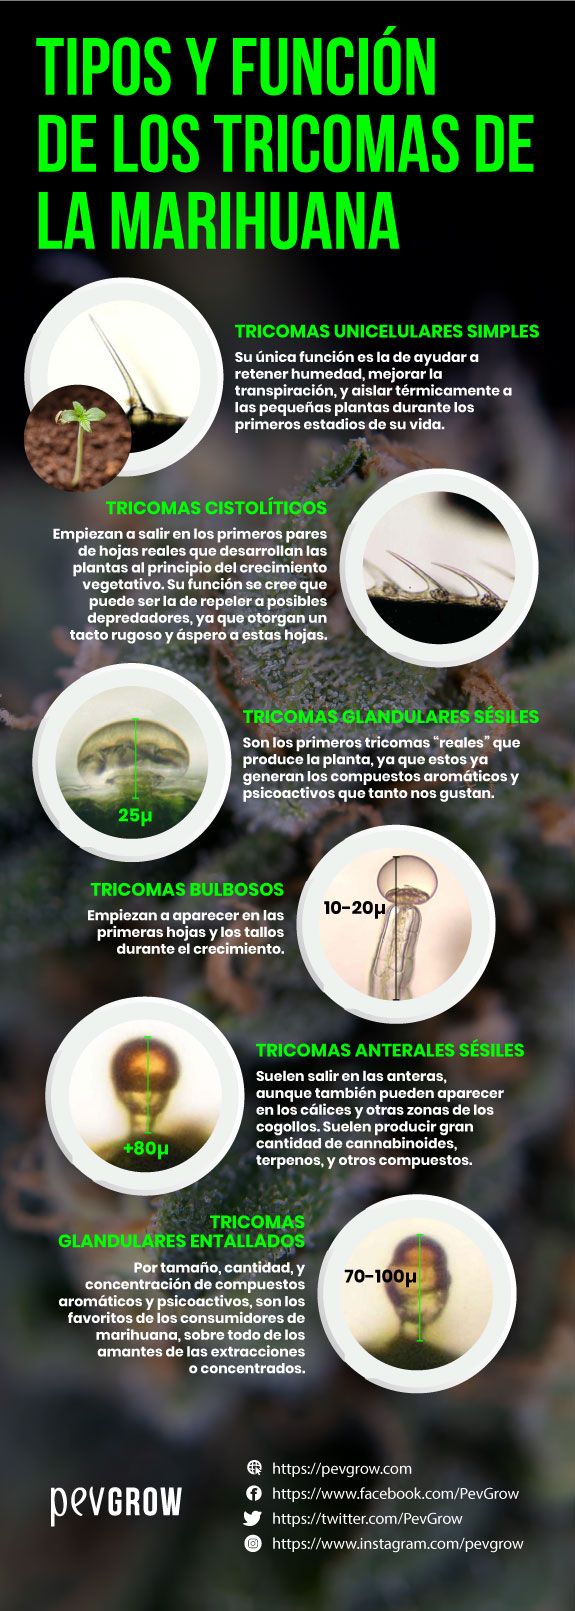 Resumen de tipos y funciones de los tricomas de la marihuana